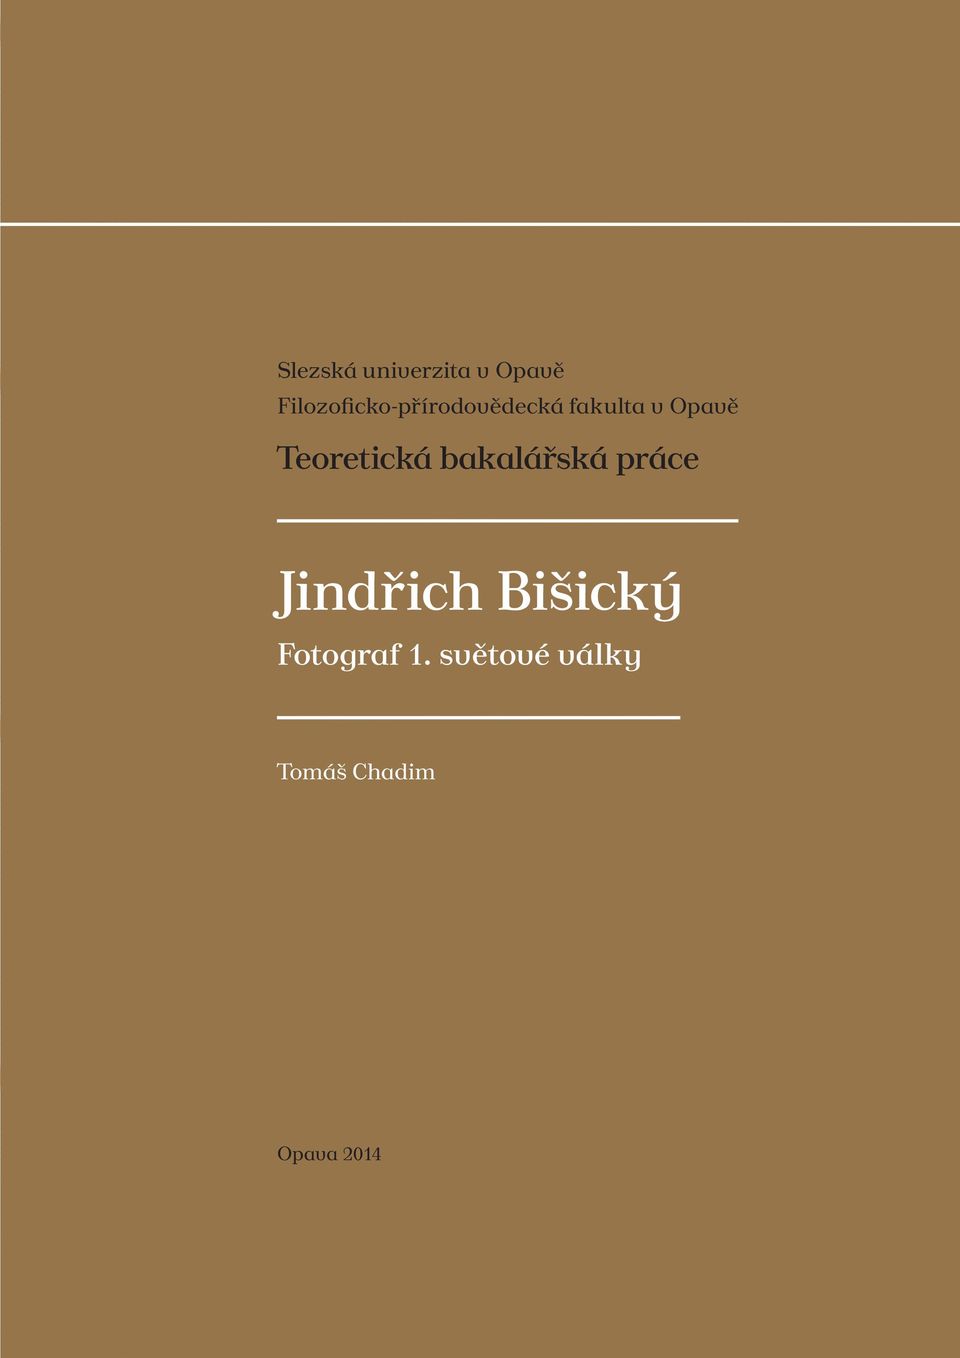 Teoretická bakalářská práce Jindřich Bišický